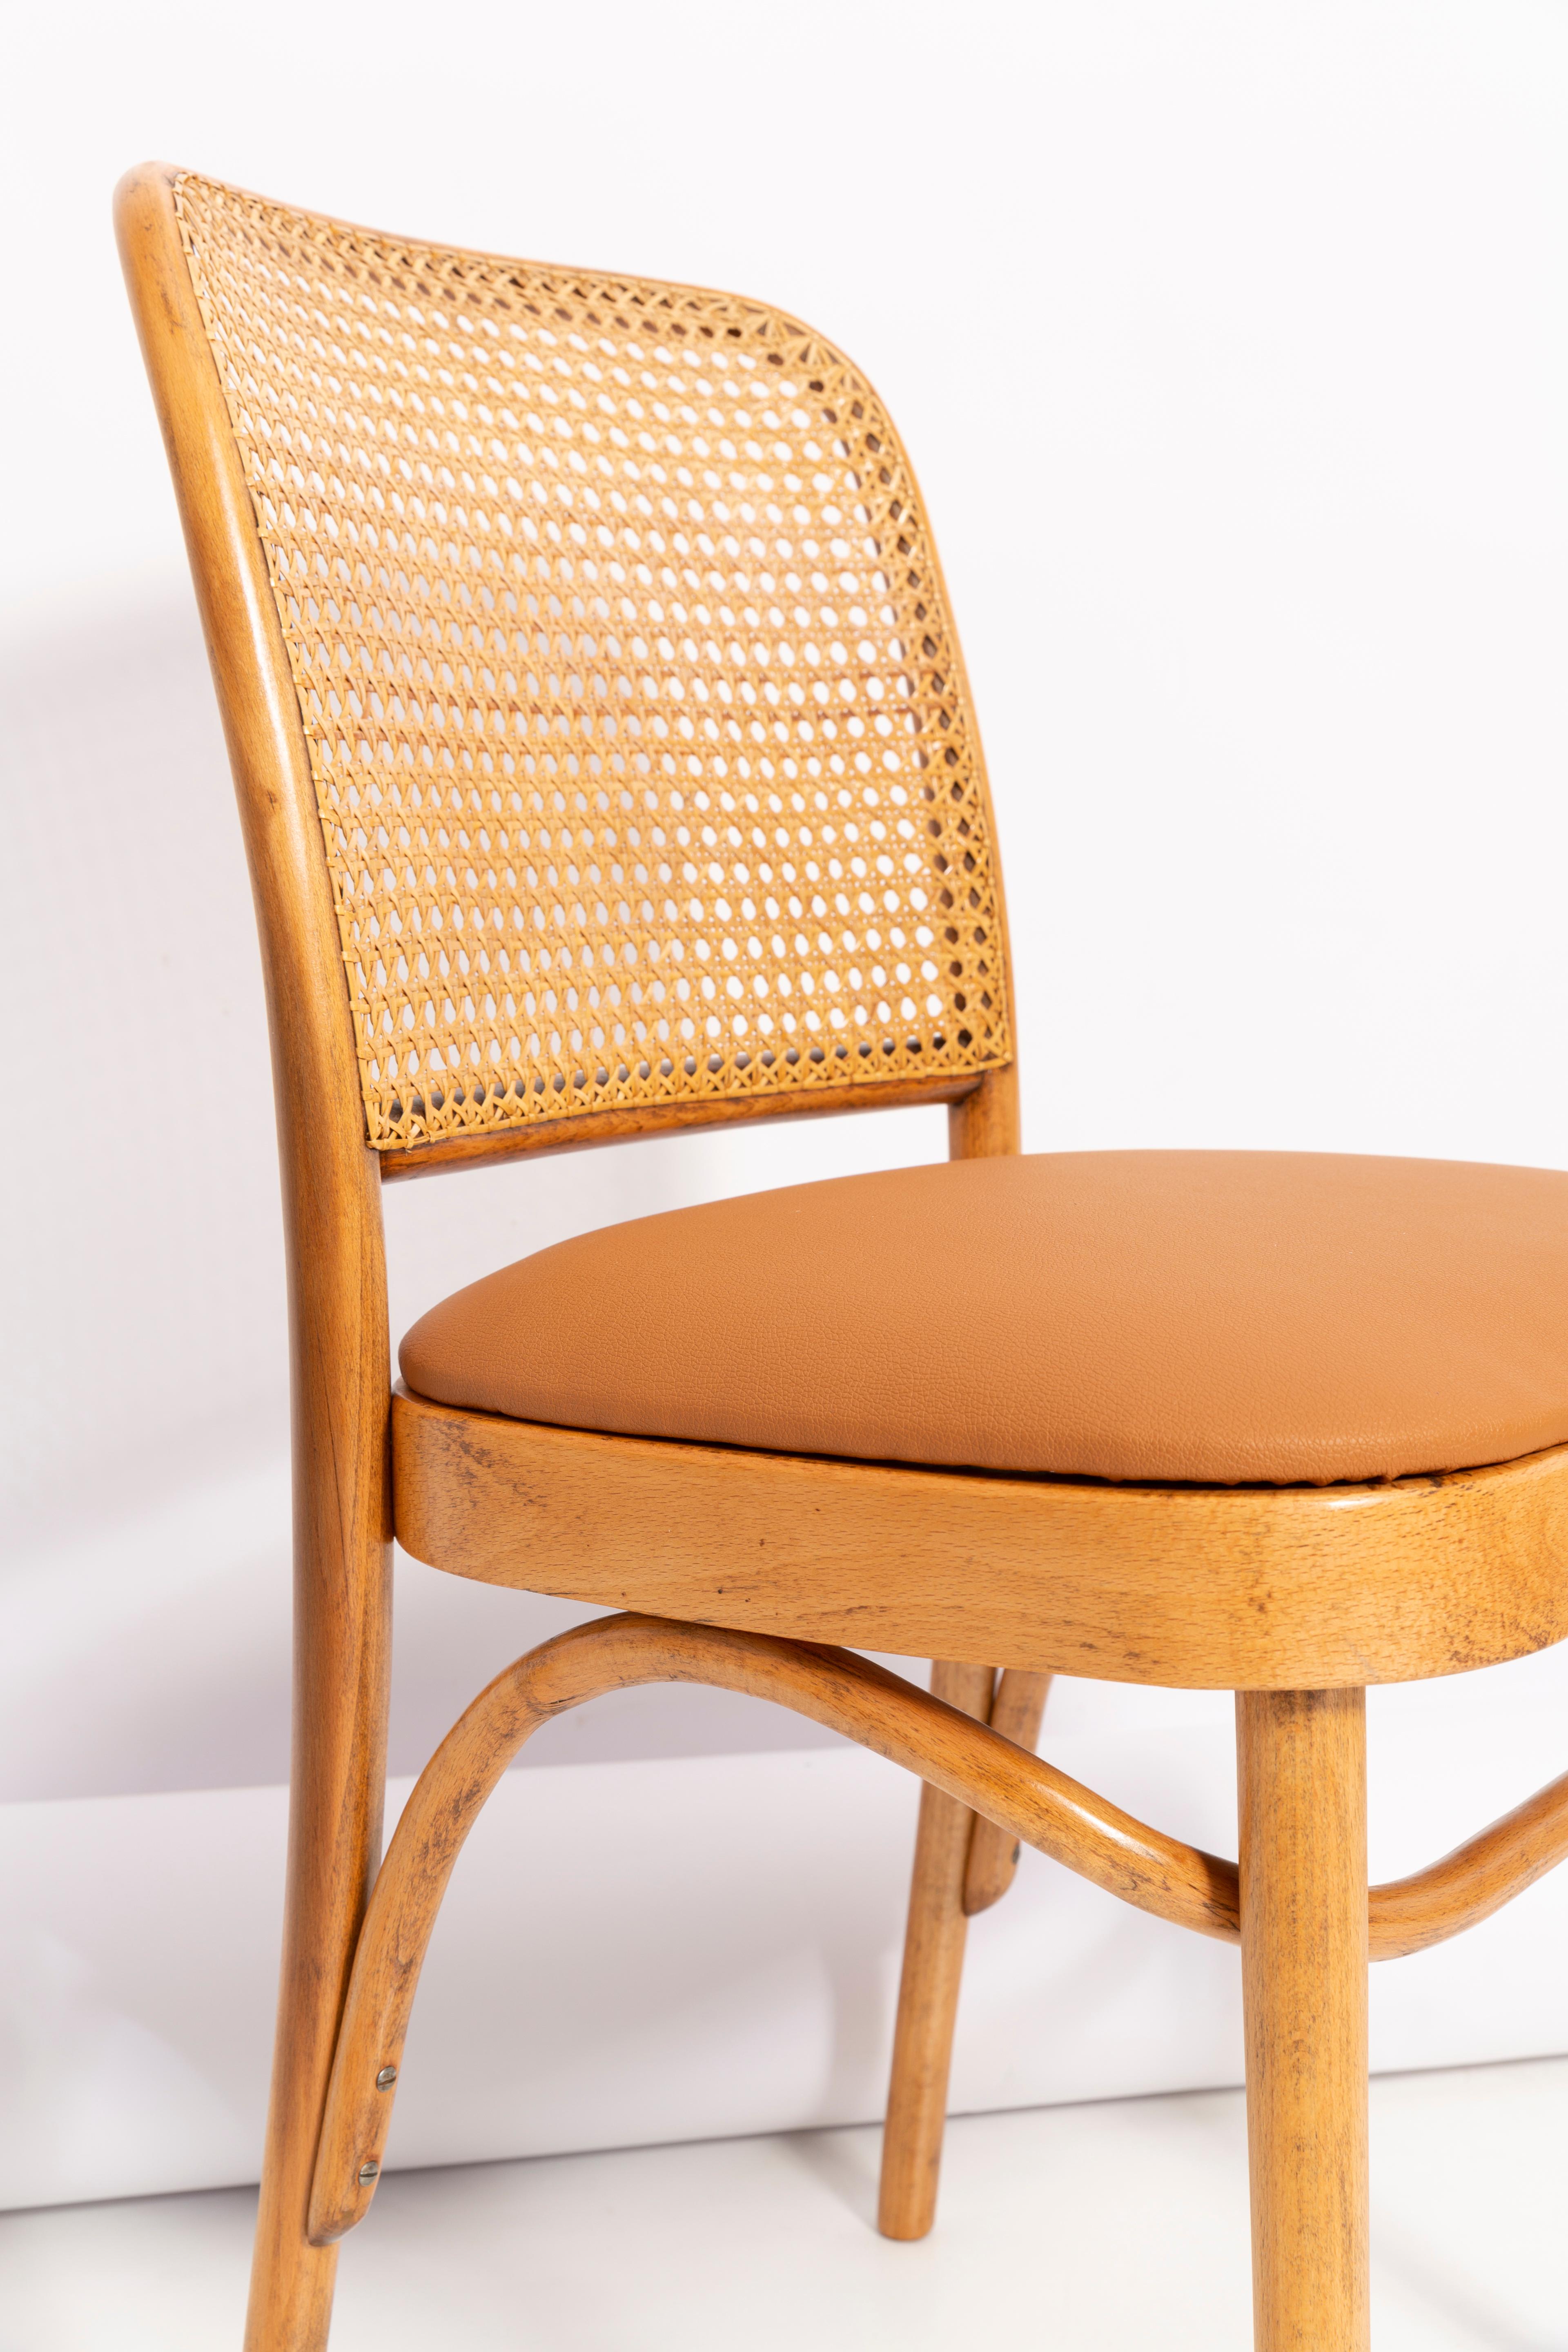 Magnifique chaise en rotin, en faux cuir camel et en bois. Ils ont été produits dans l'usine de menuiserie Thonet et nous les avons entièrement rénovés. La construction est faite de bois de hêtre teinté à l'eau couleur brun chêne. Les chaises sont